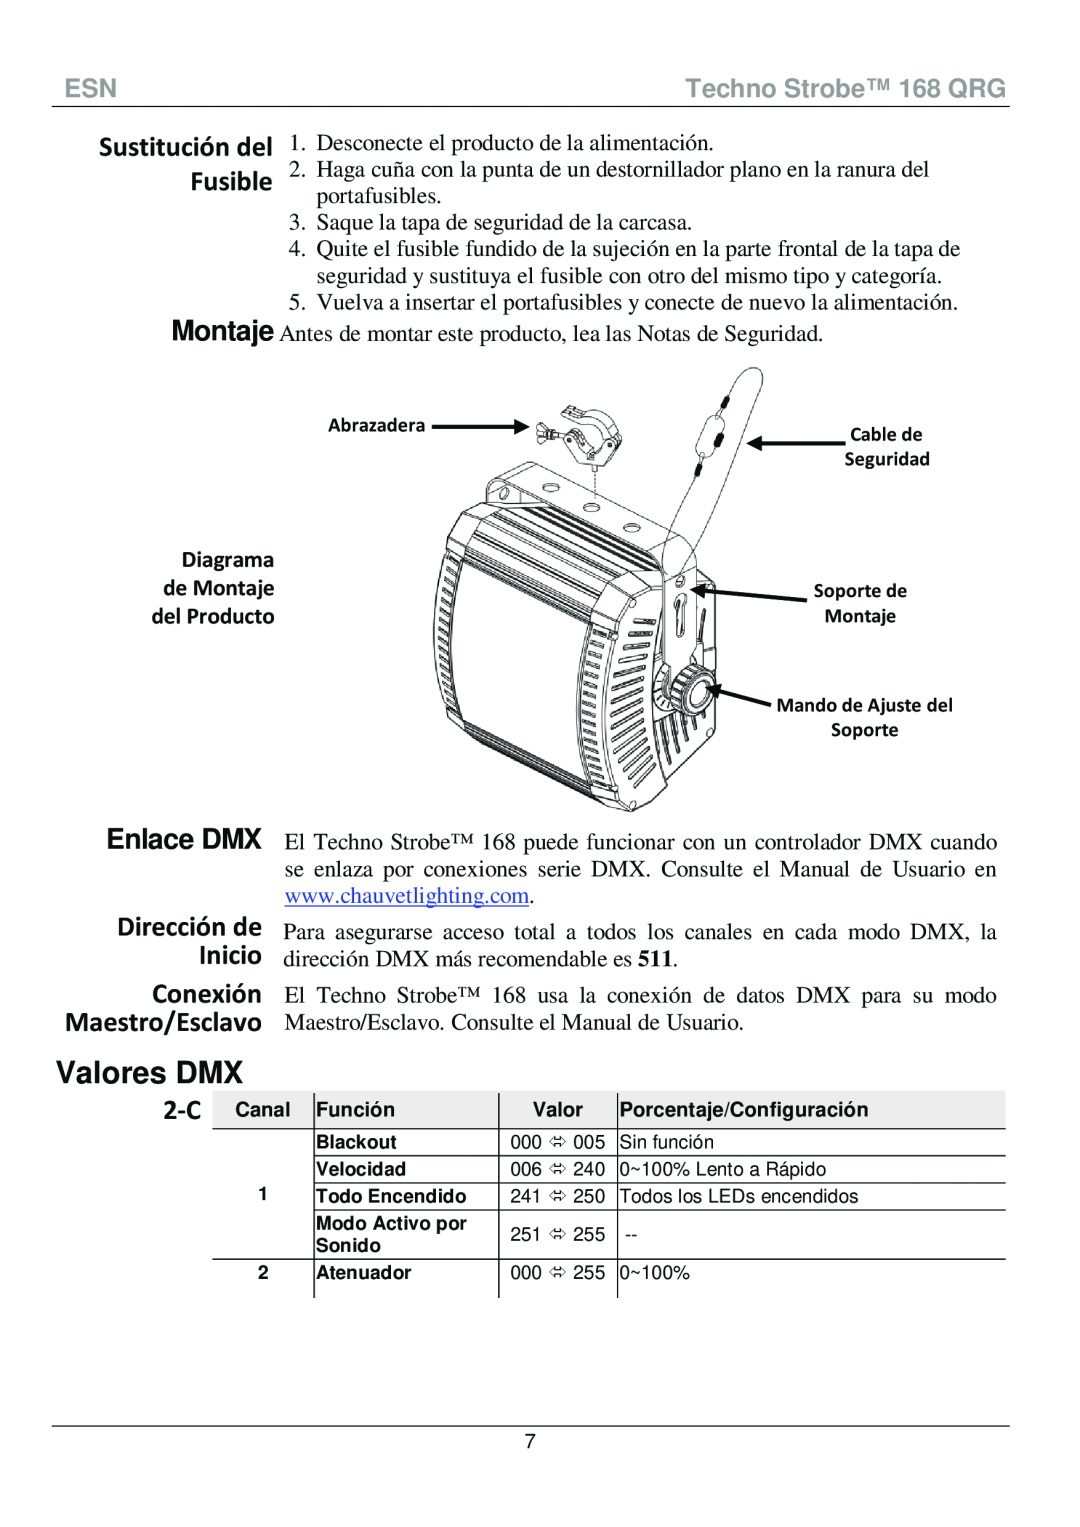 Chauvet 168 manual Valores DMX, Enlace DMX, Dirección de Inicio Conexión Maestro/Esclavo, Sustitución del Fusible, Diagrama 